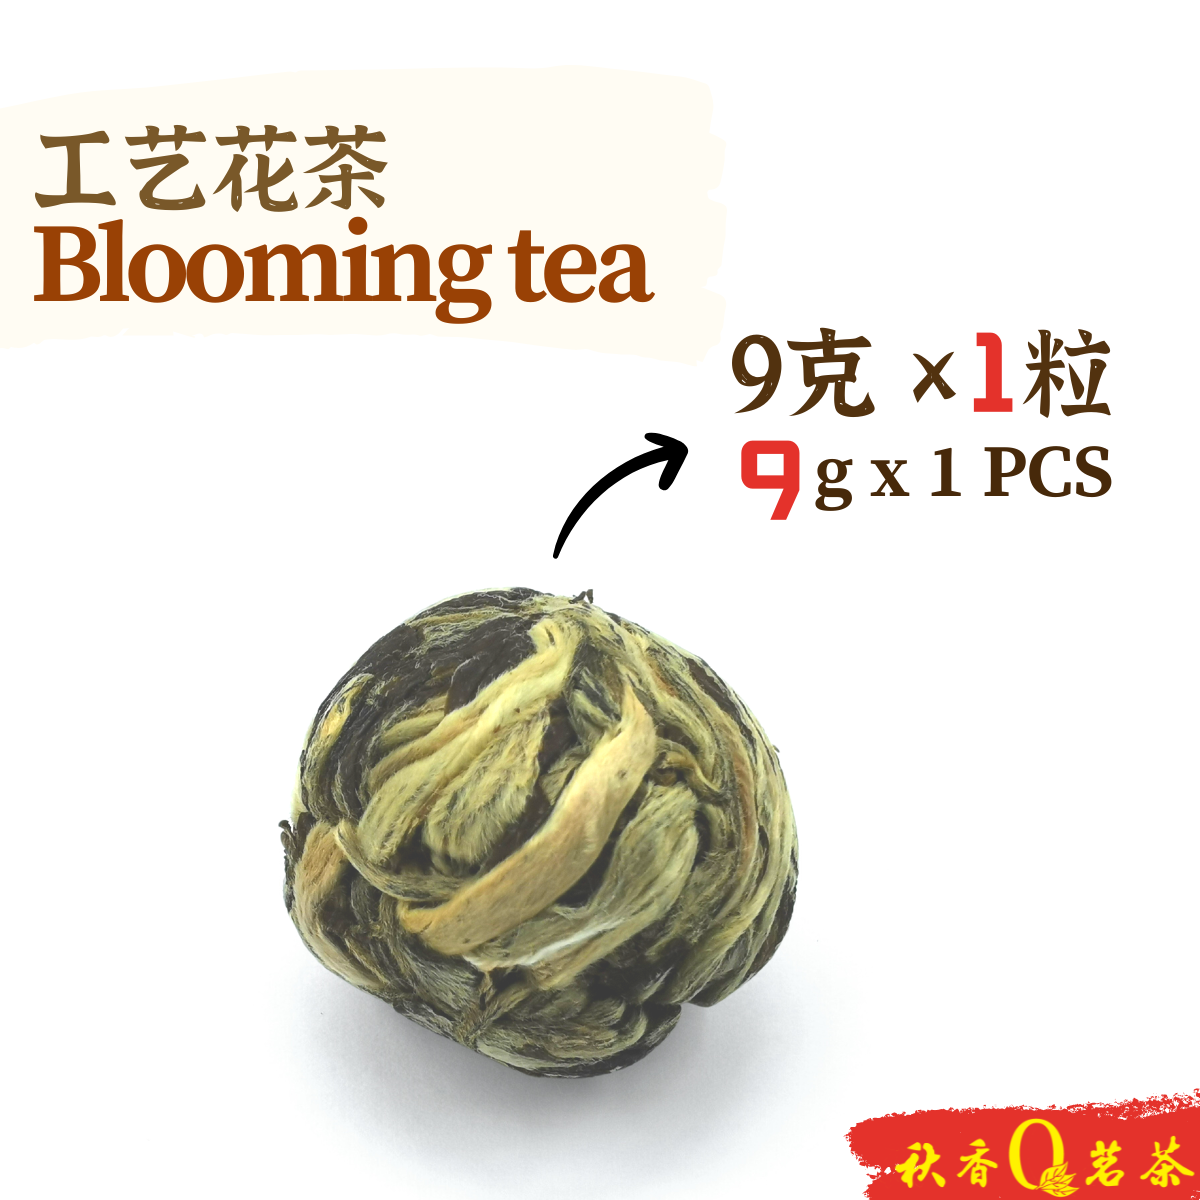 锦上添花 Even better 【1 PCS】｜【工艺花茶 Blooming tea】